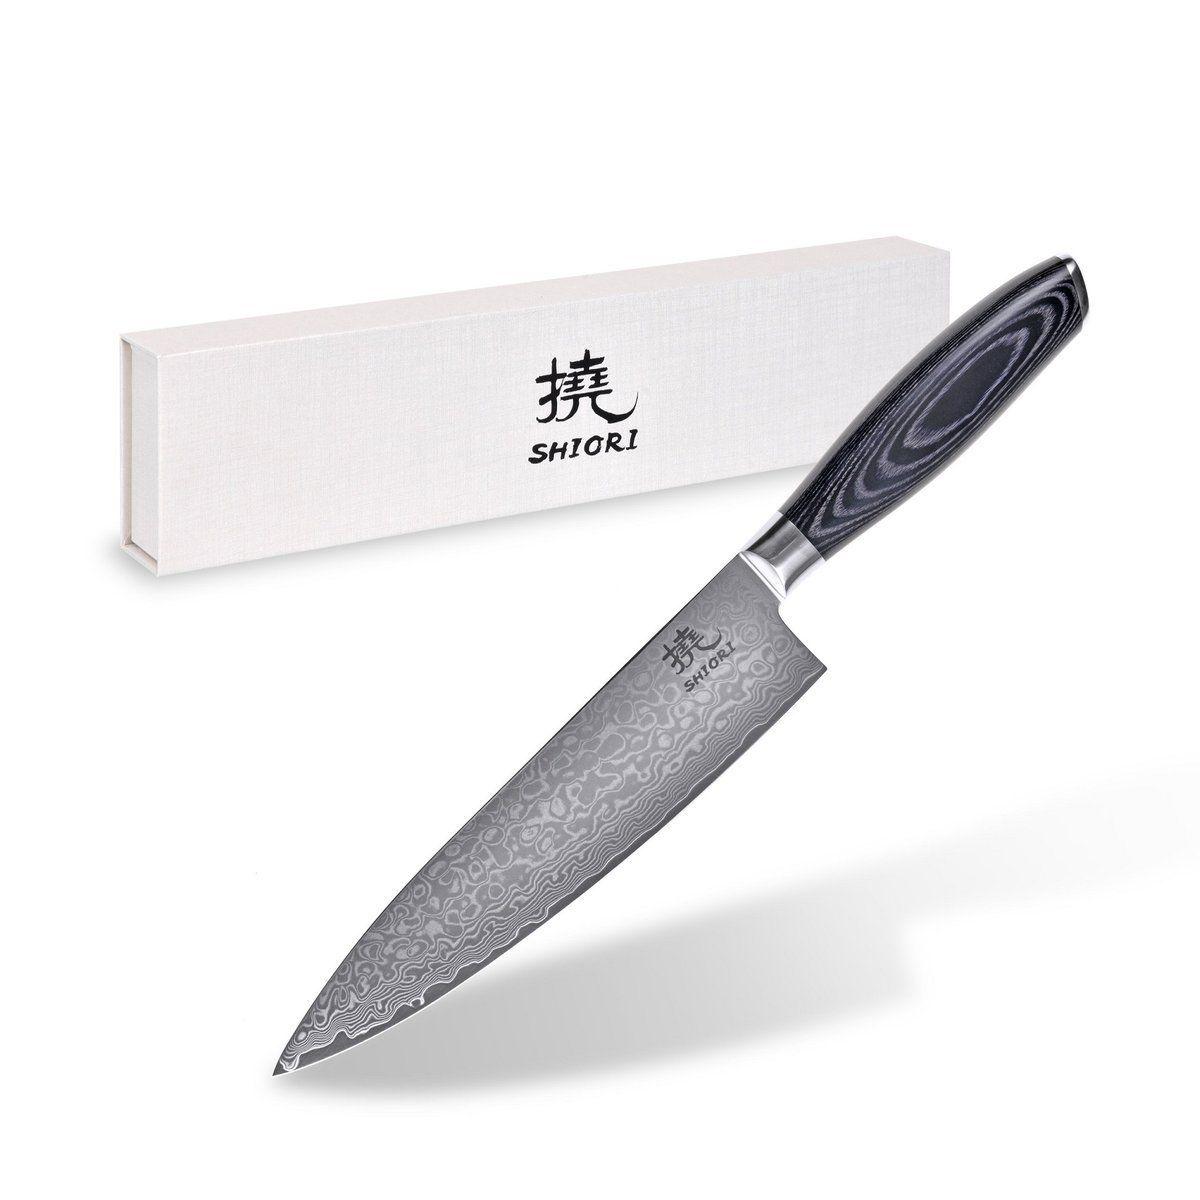 Professional chef's knife Shiori Kuro Sifu